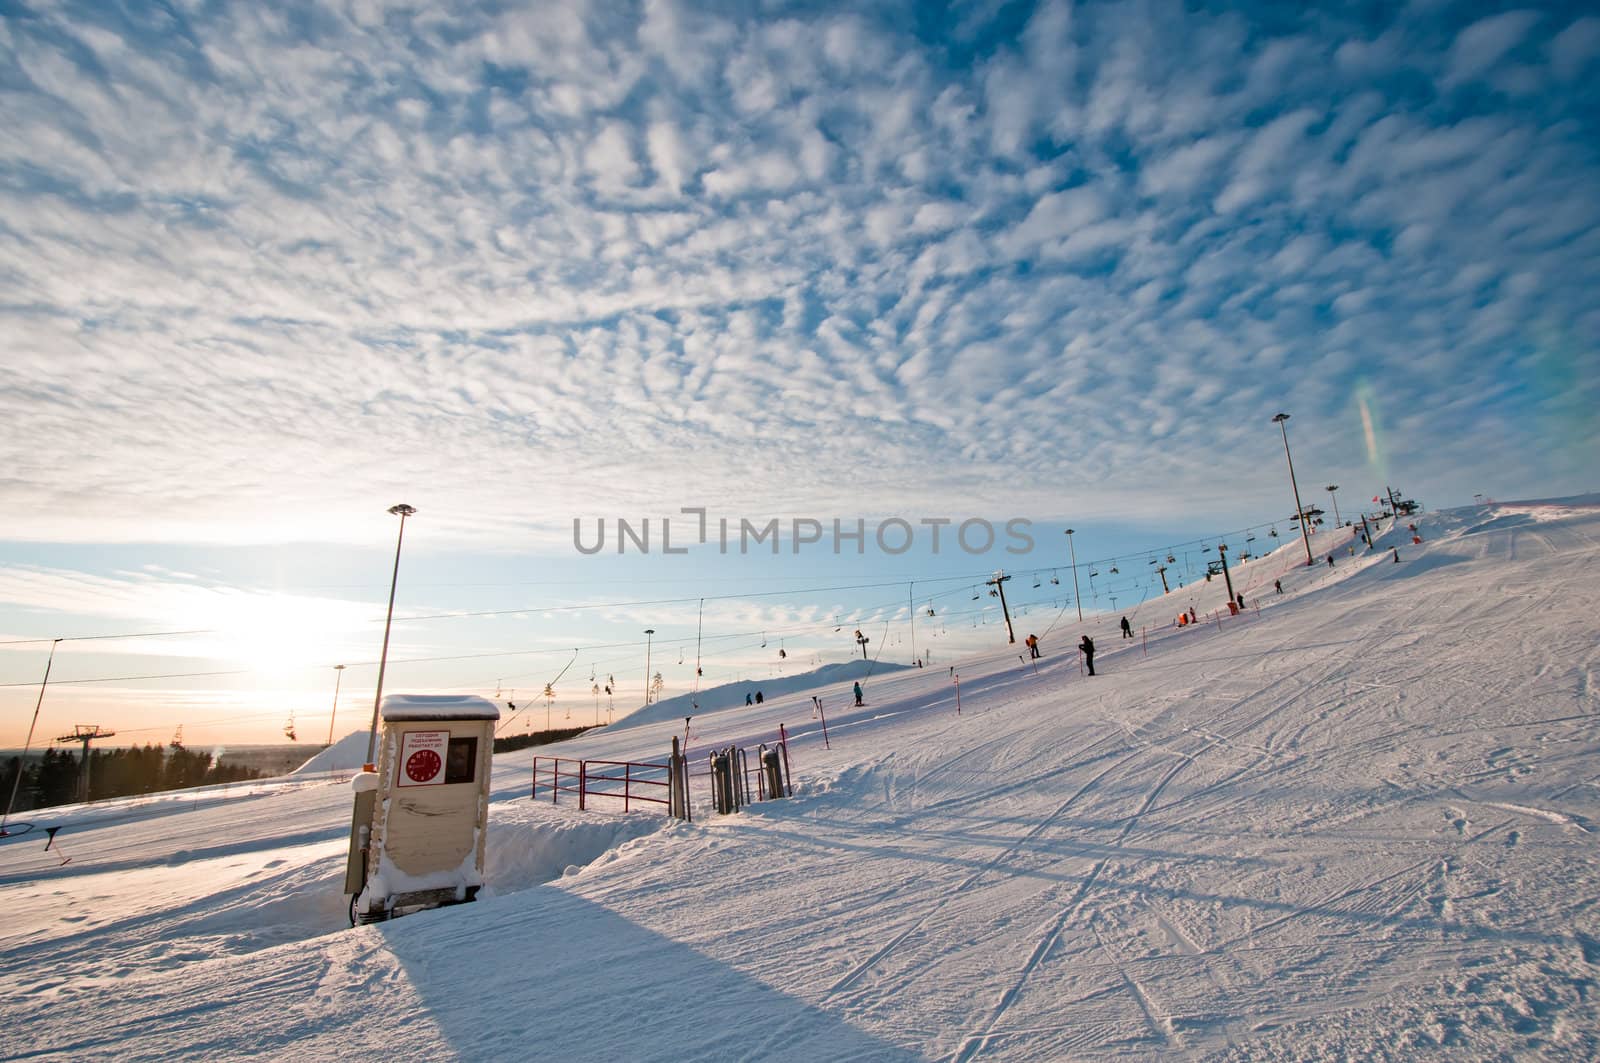 Ski slope at sunrise by dmitryelagin